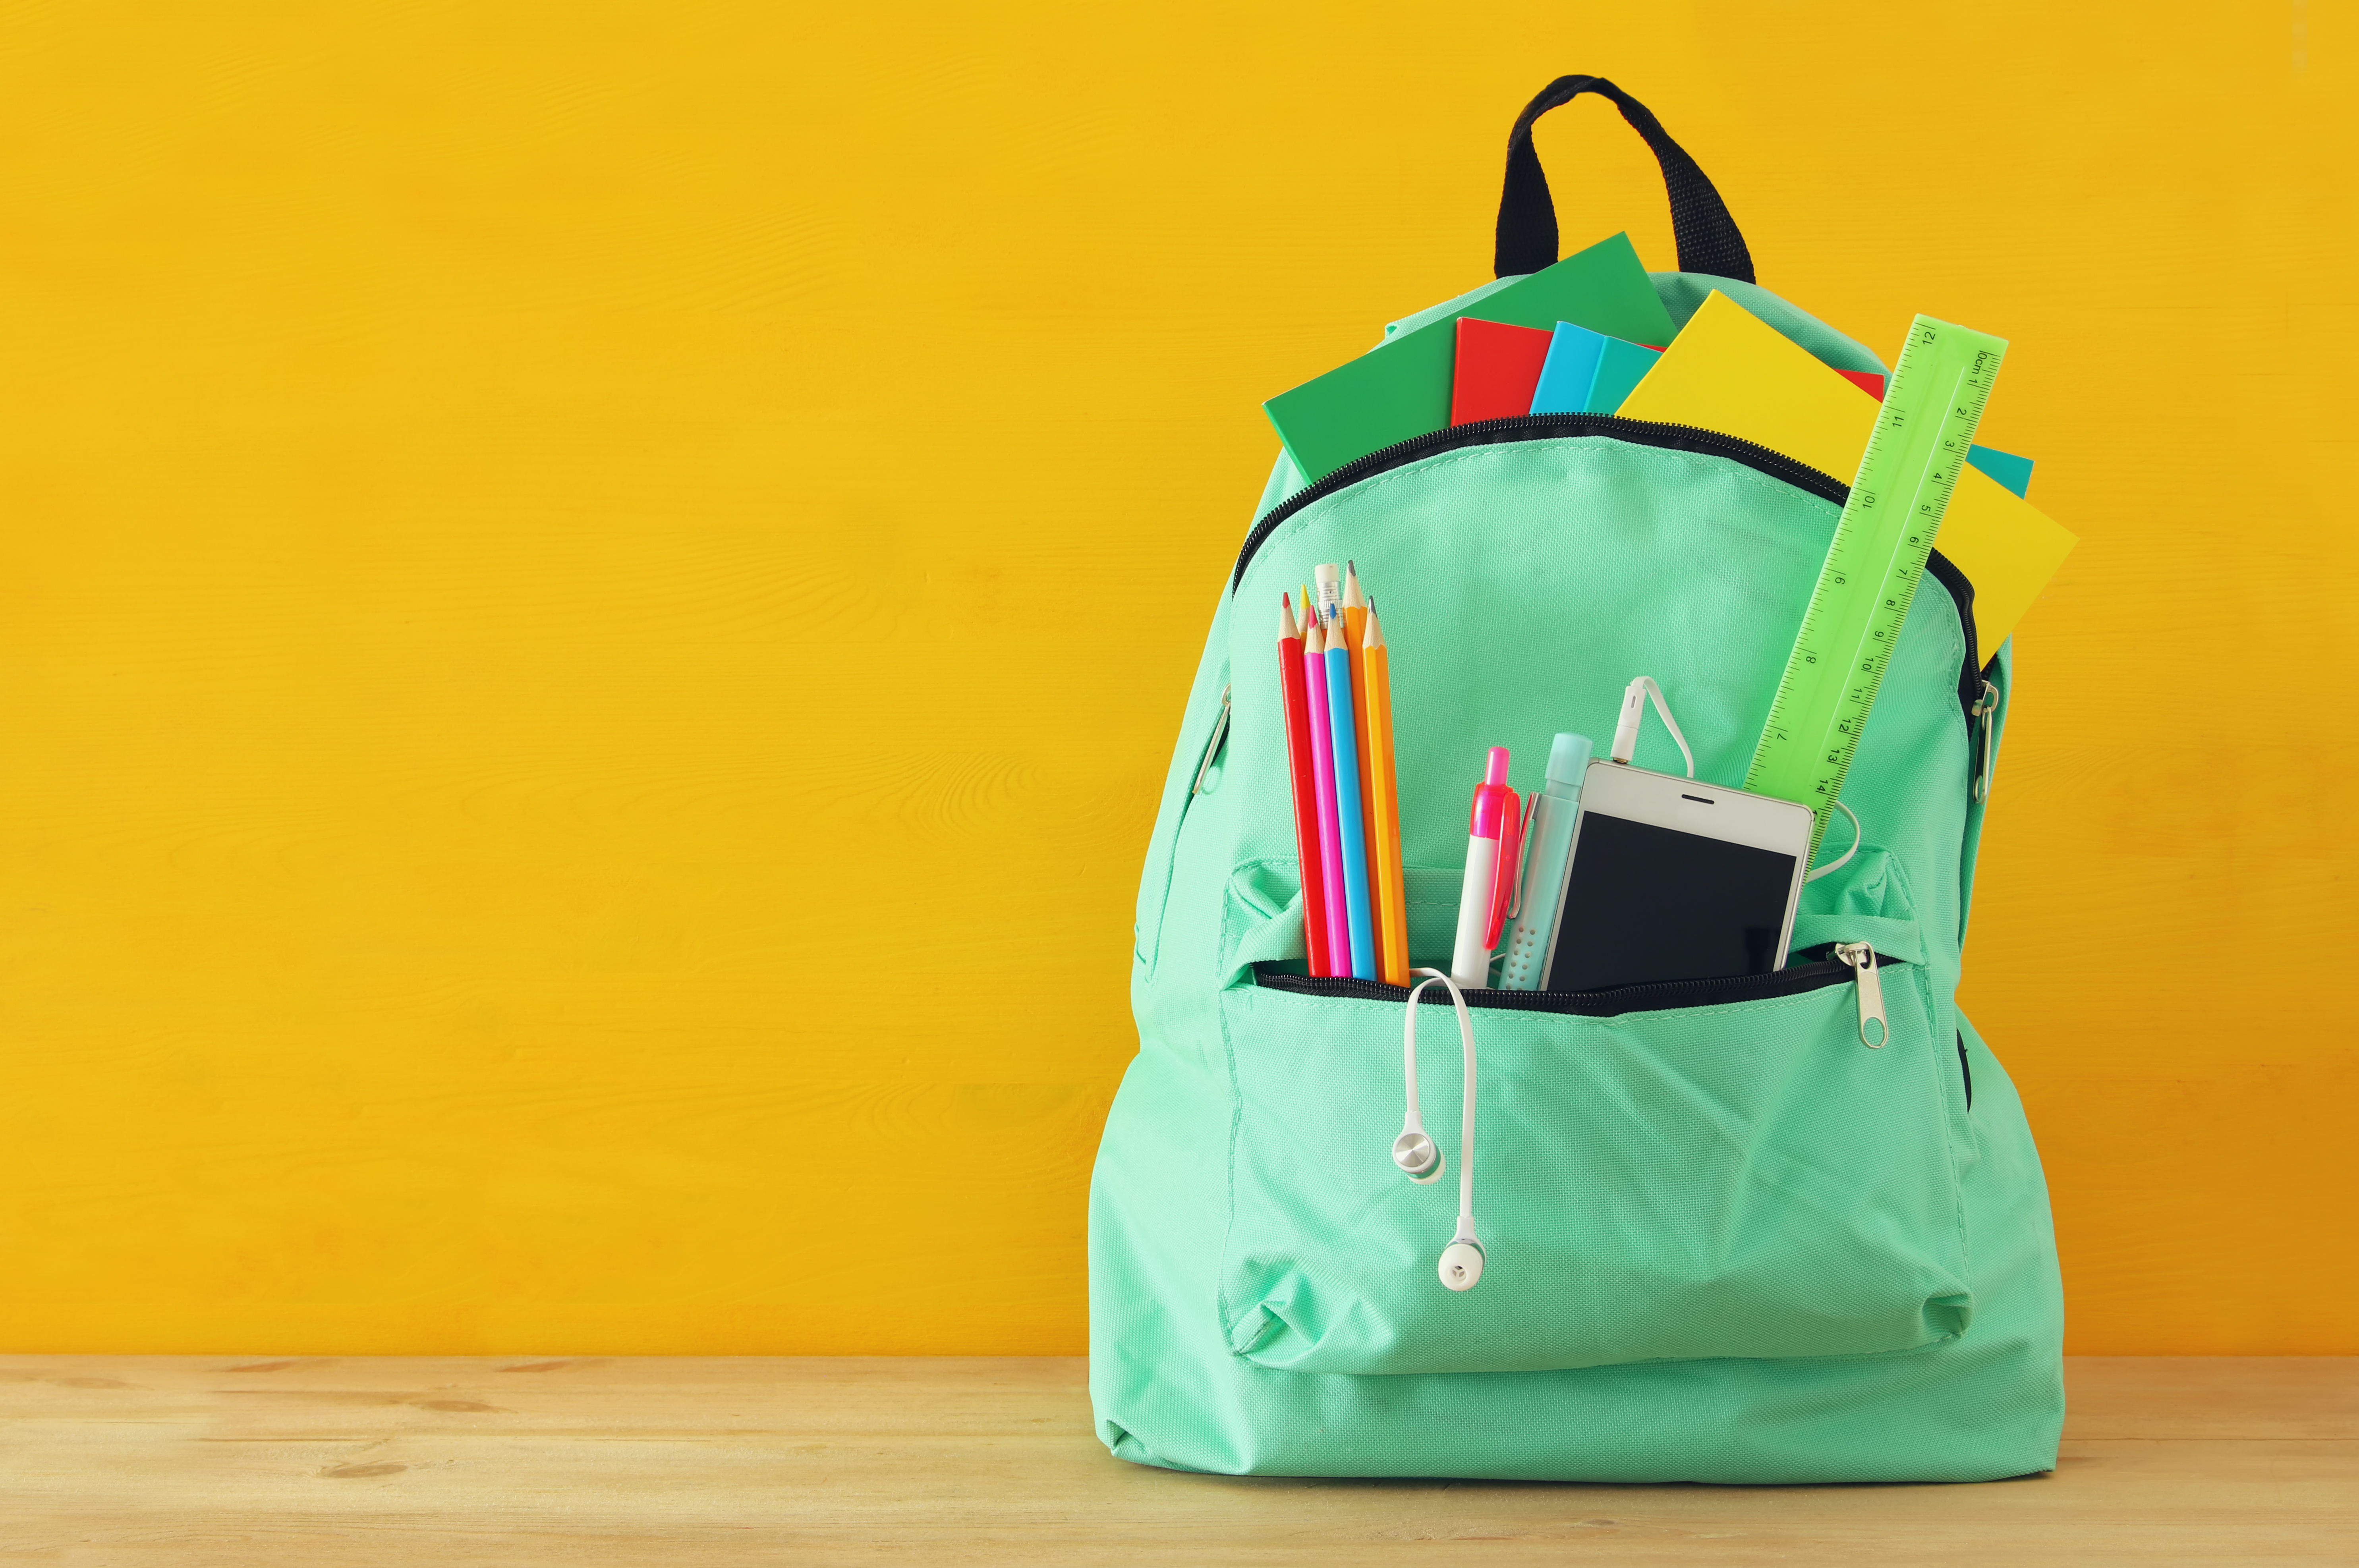 Okul çantası kullanımının omurga sağlığına etkileri